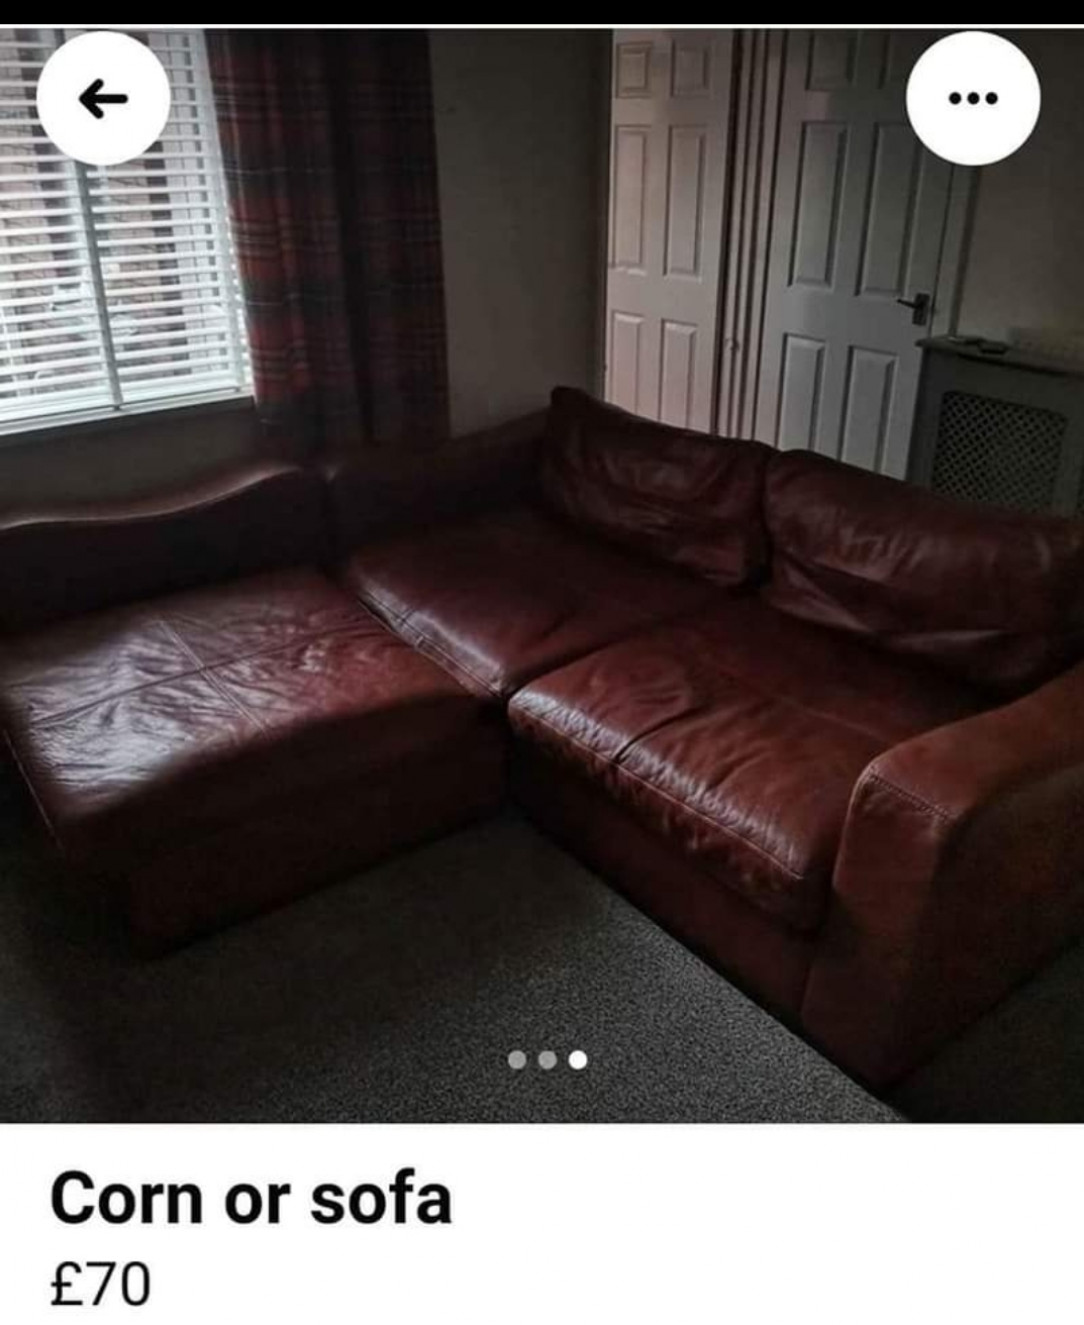 Corn or sofa